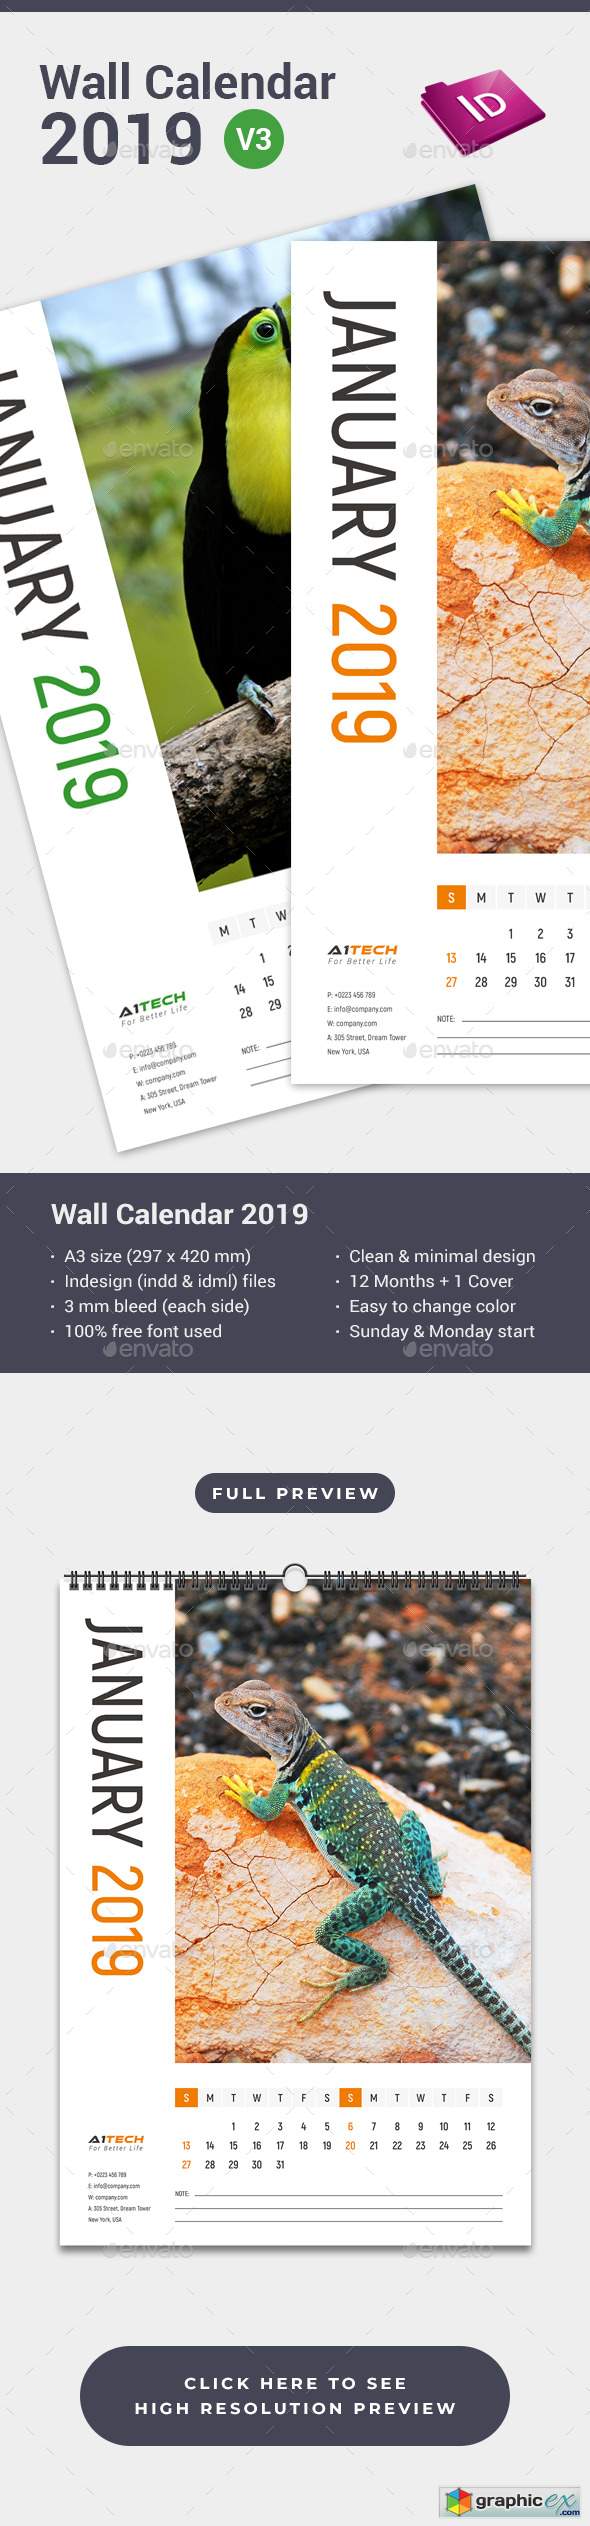 Wall Calendar 2019